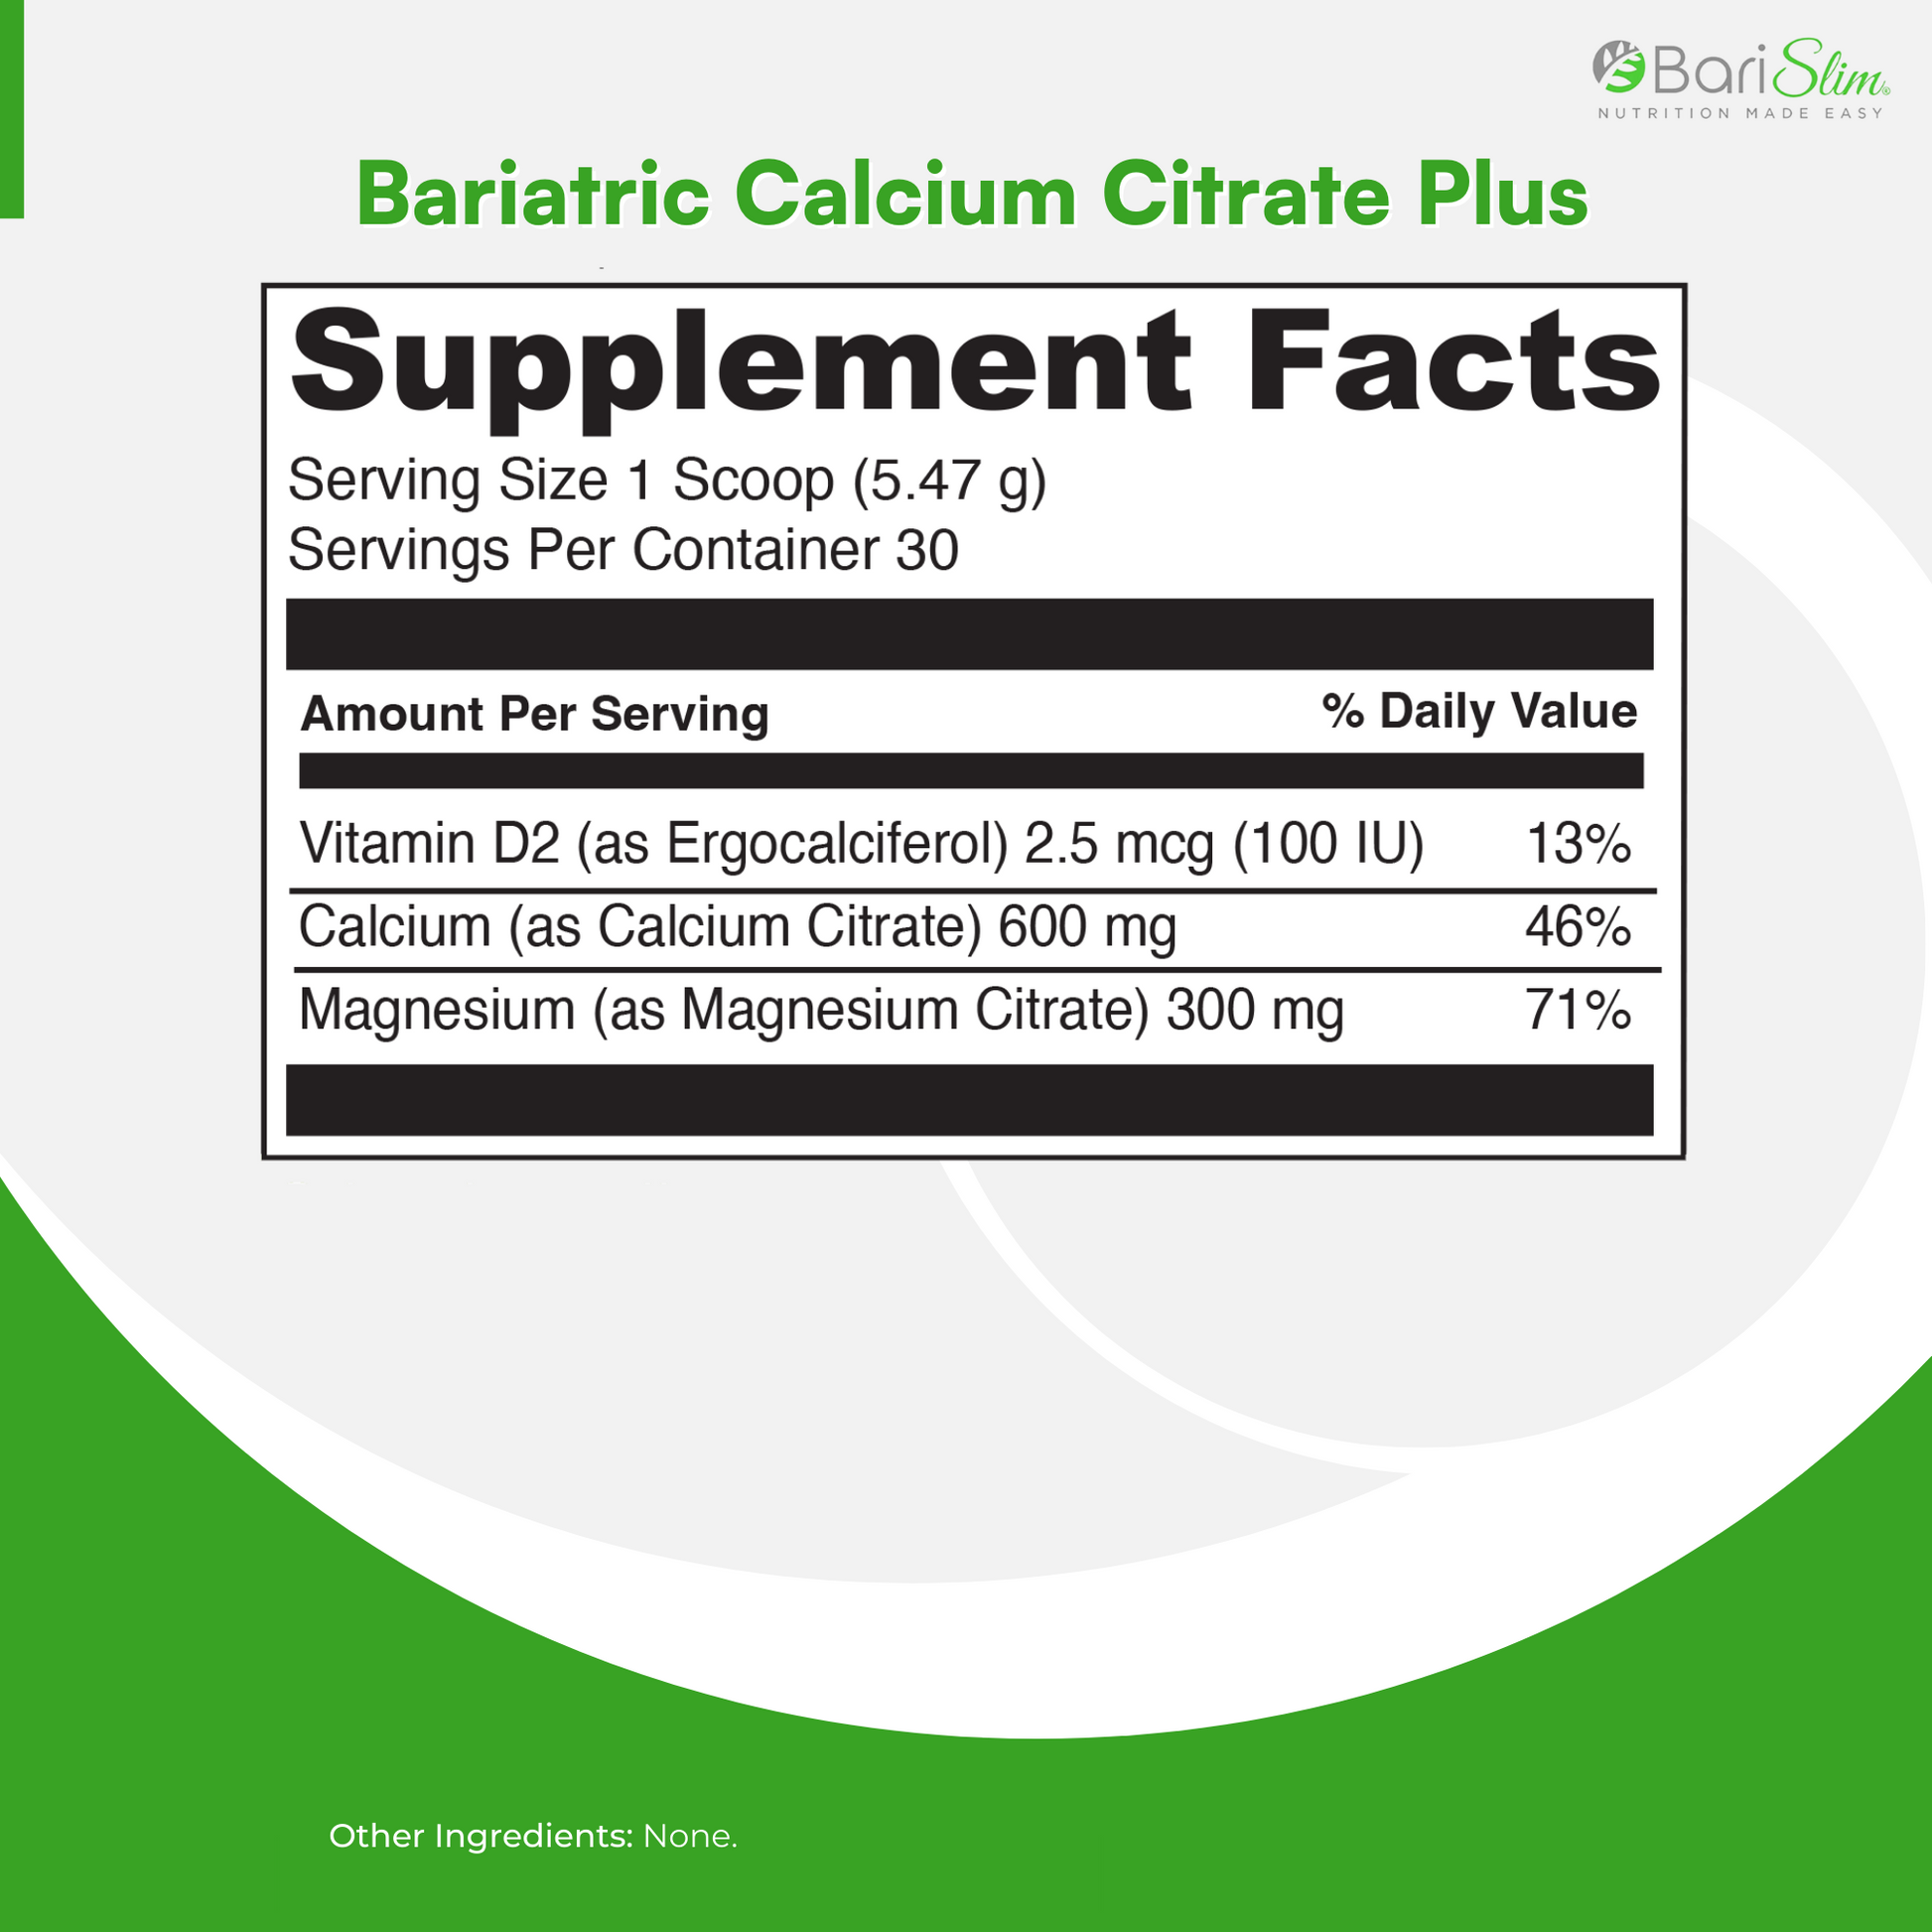 bariatric calcium citrate plus supplements facts